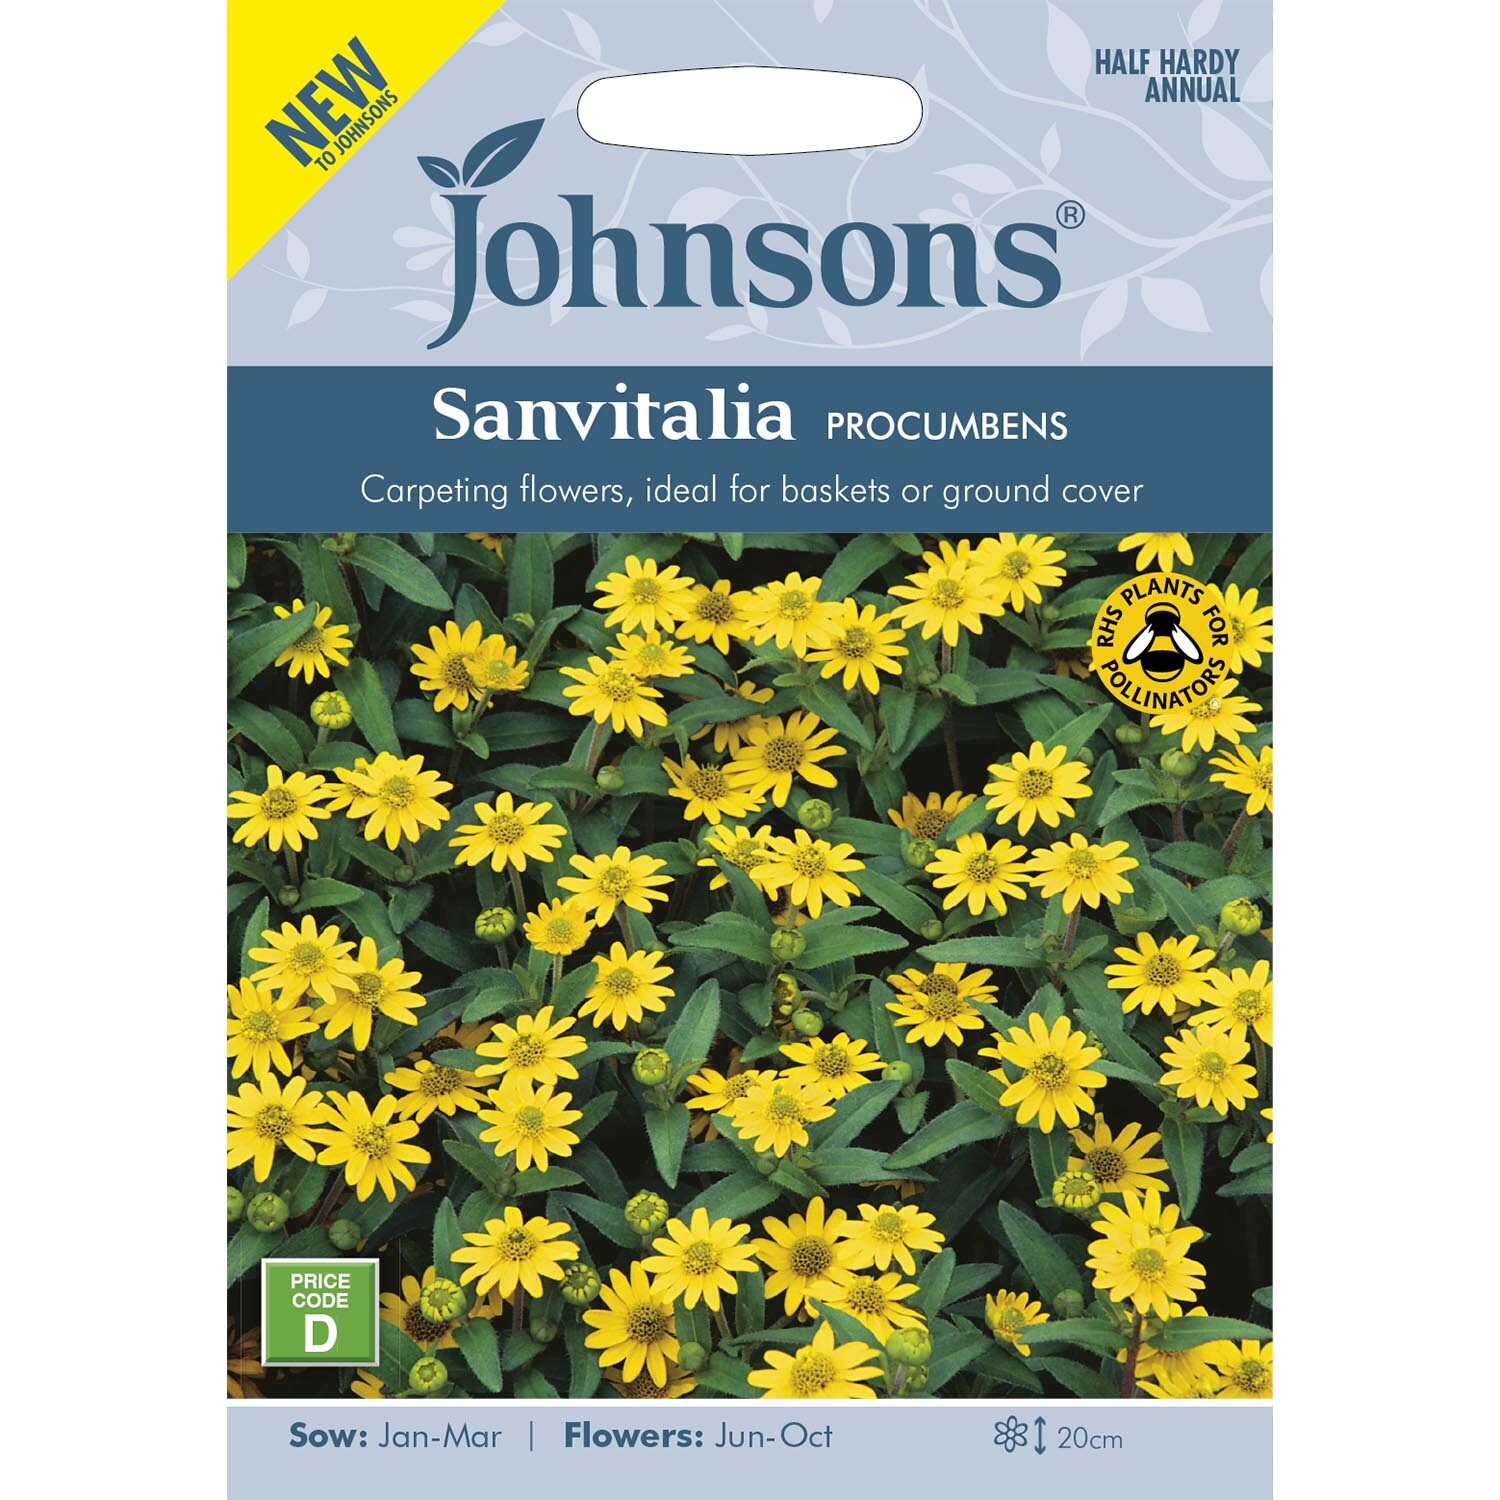 Johnsons Sanvitalia Procumbens Flower Seeds Image 2